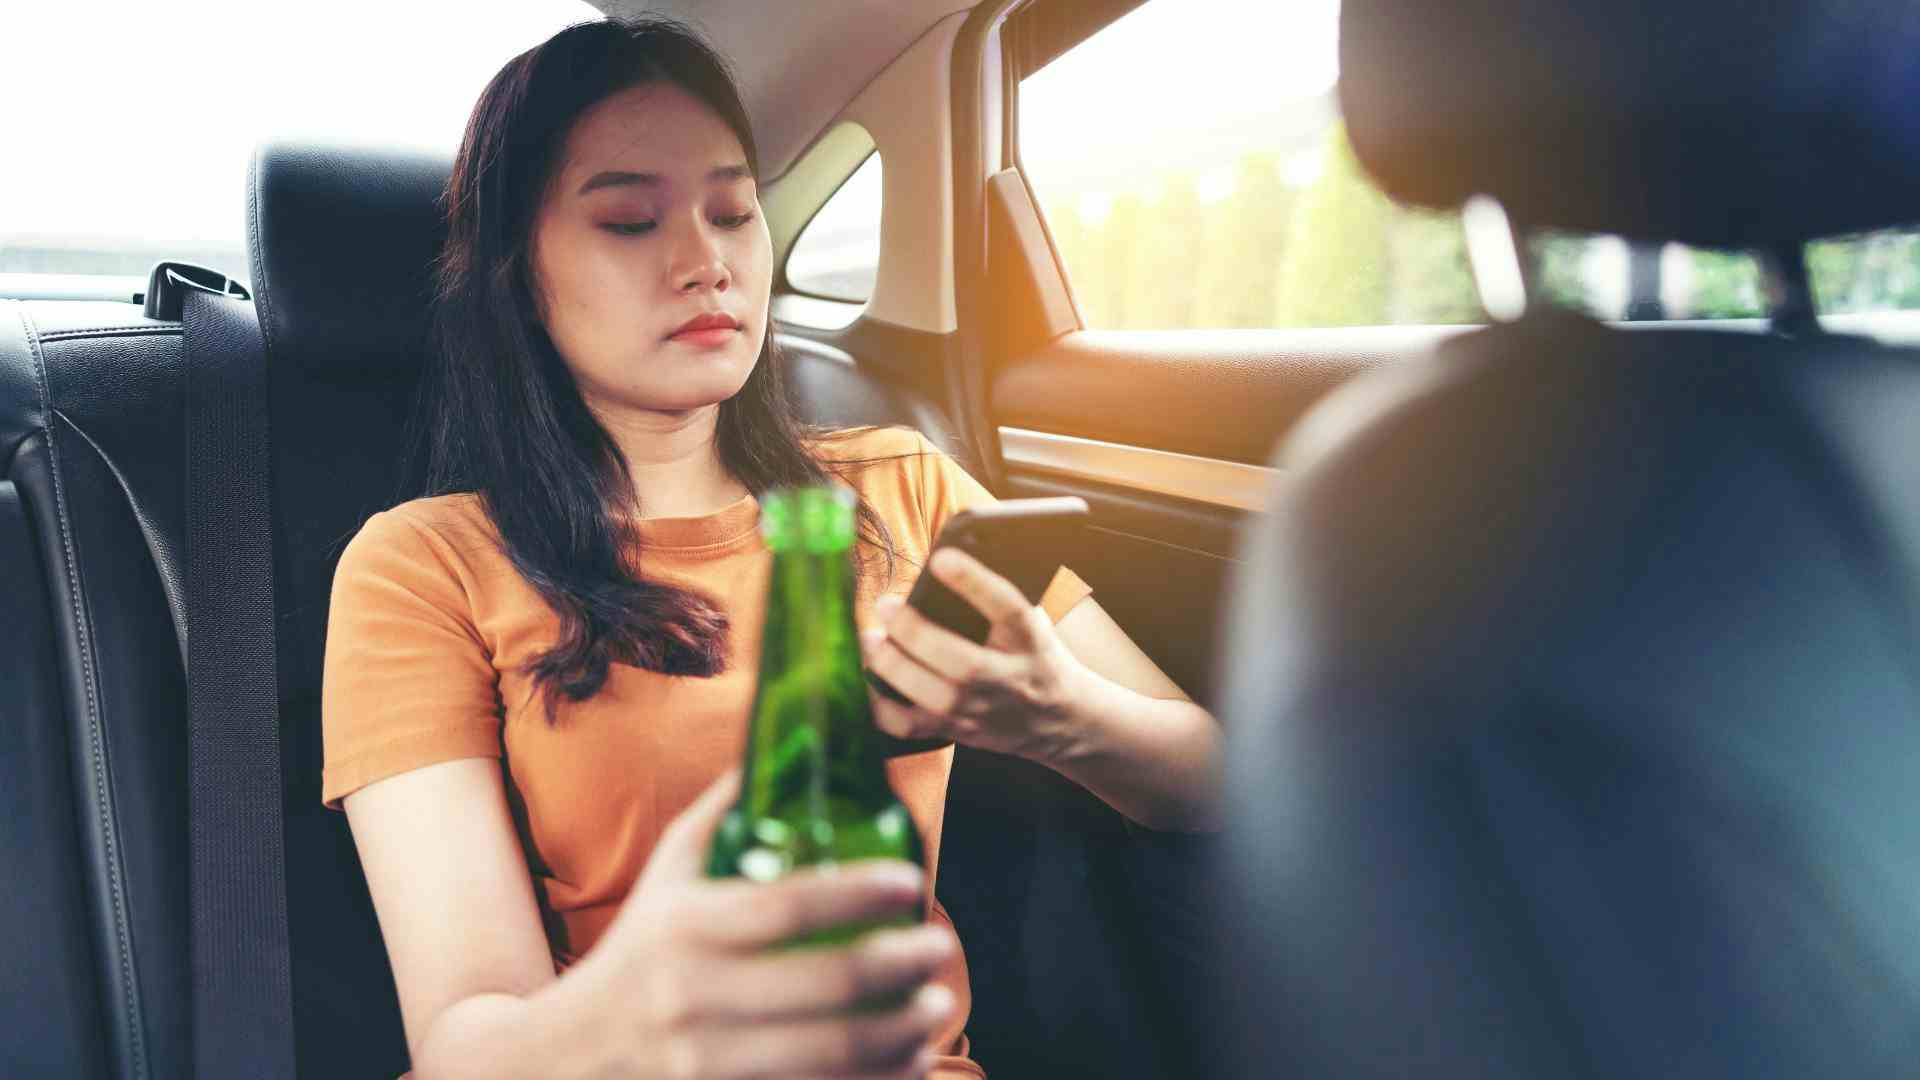 bebida alcoolica no carro